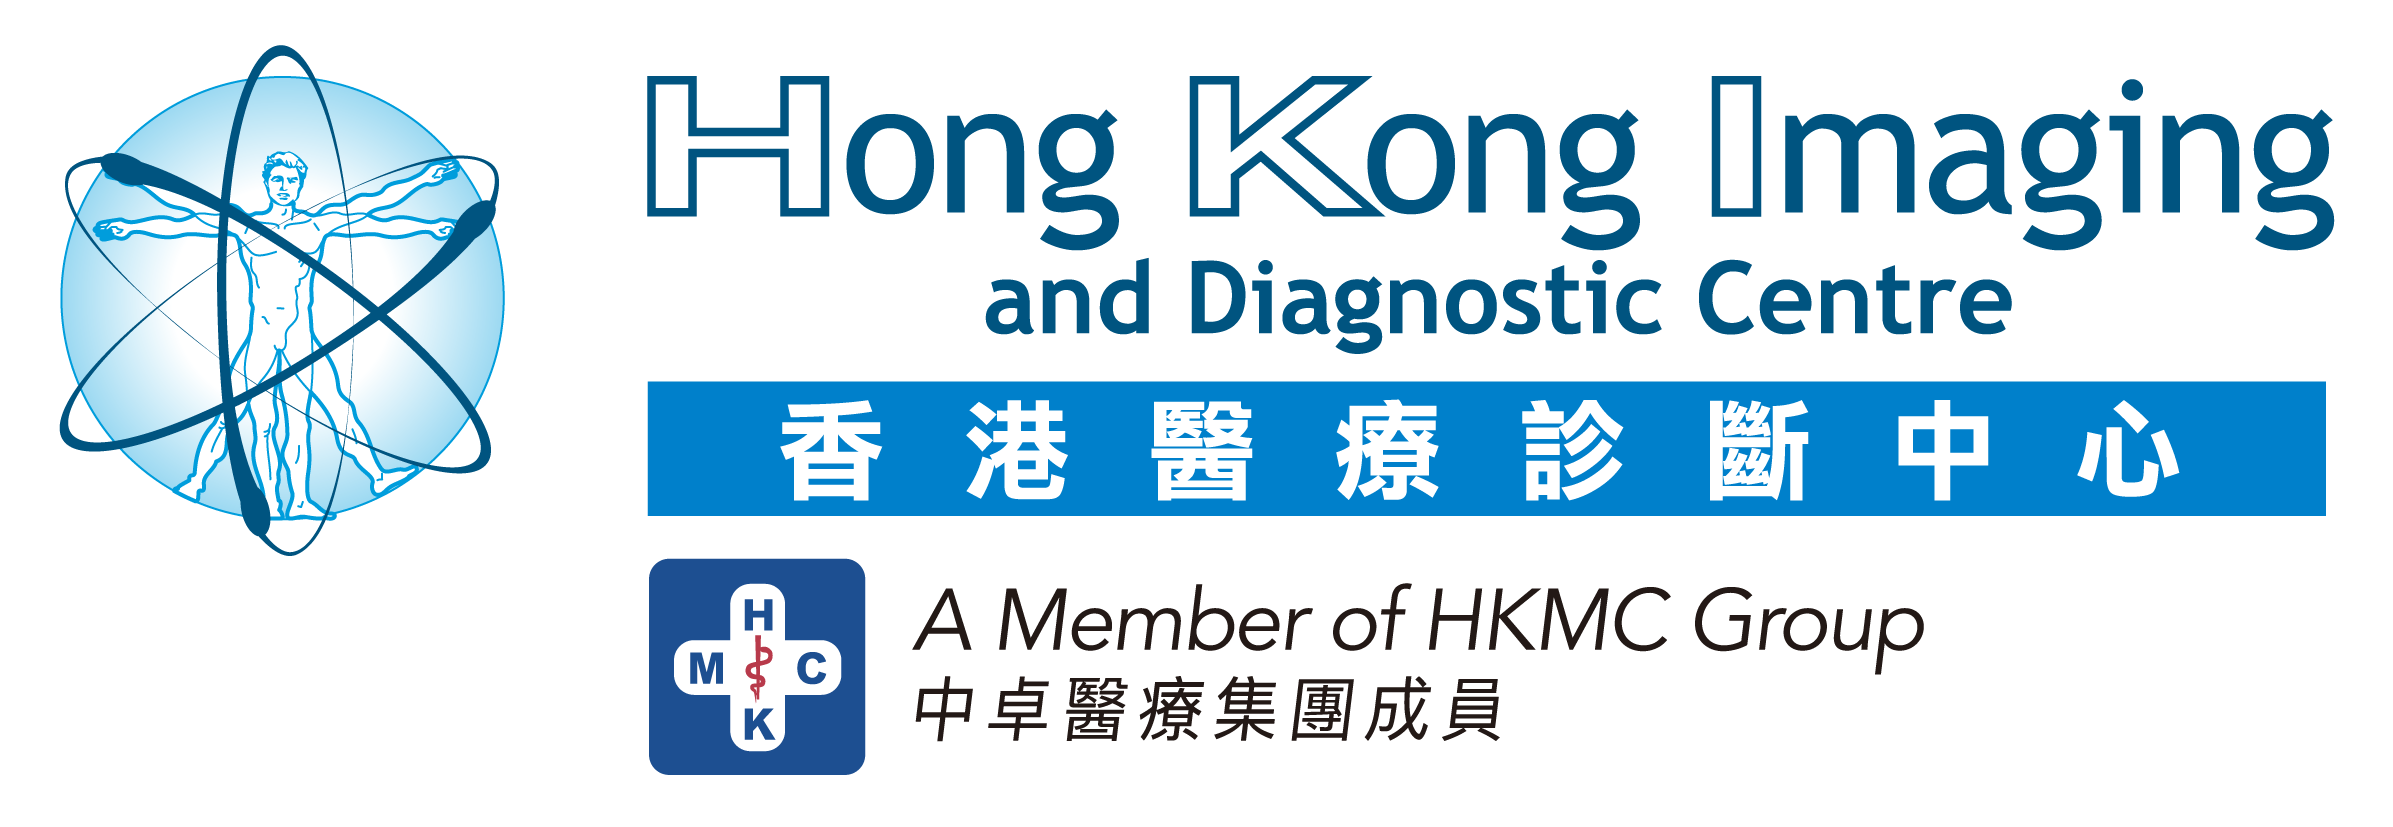 Hong Kong Imaging and Diagnostic Centre